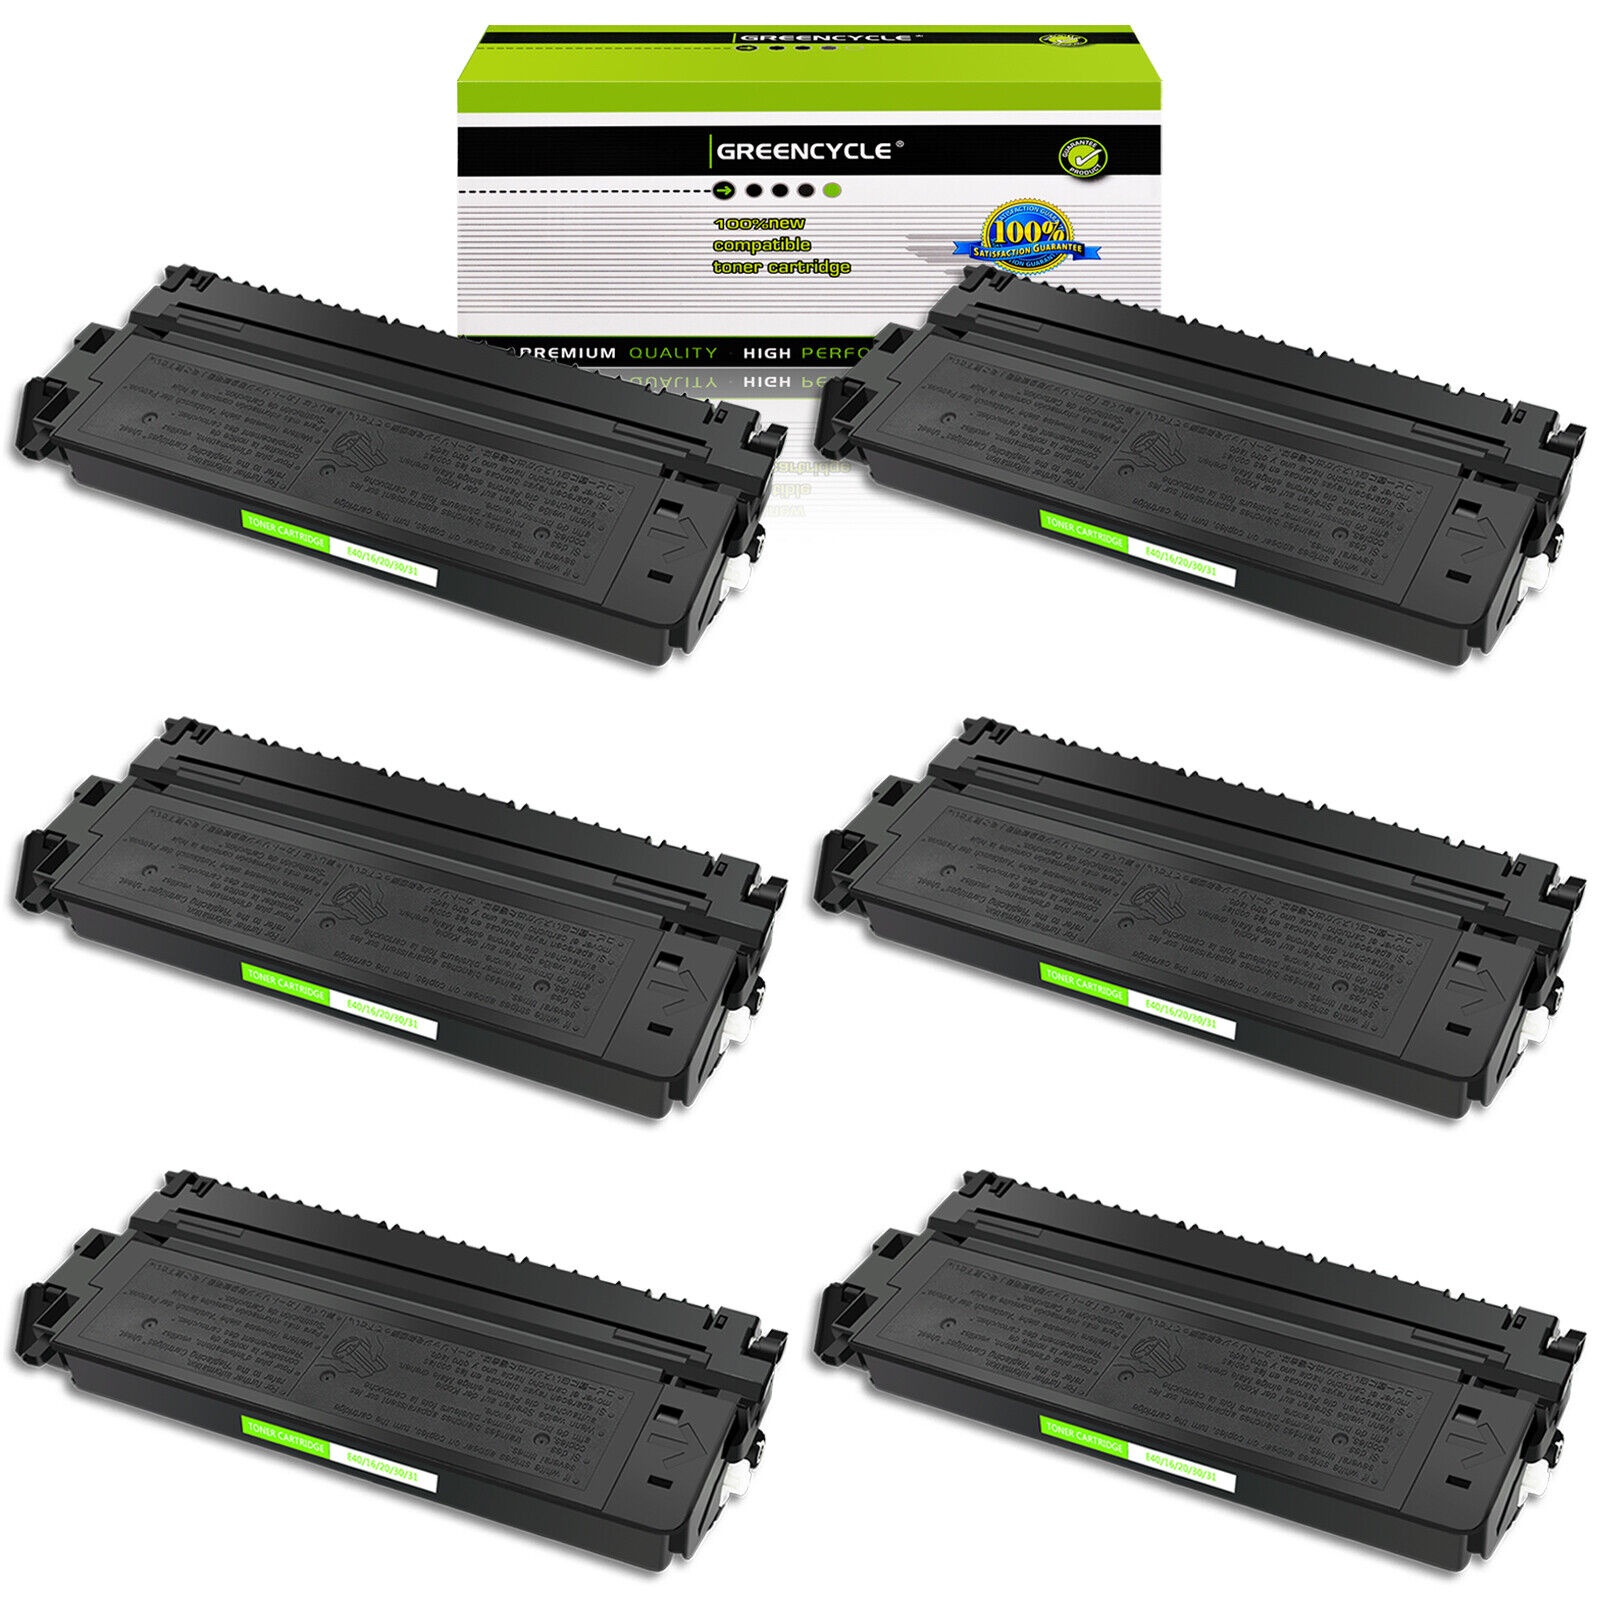 6PK E40 BLACK Toner Cartridge Fits for Canon FC-530 PC-900 PC-941 PC-981 Printer